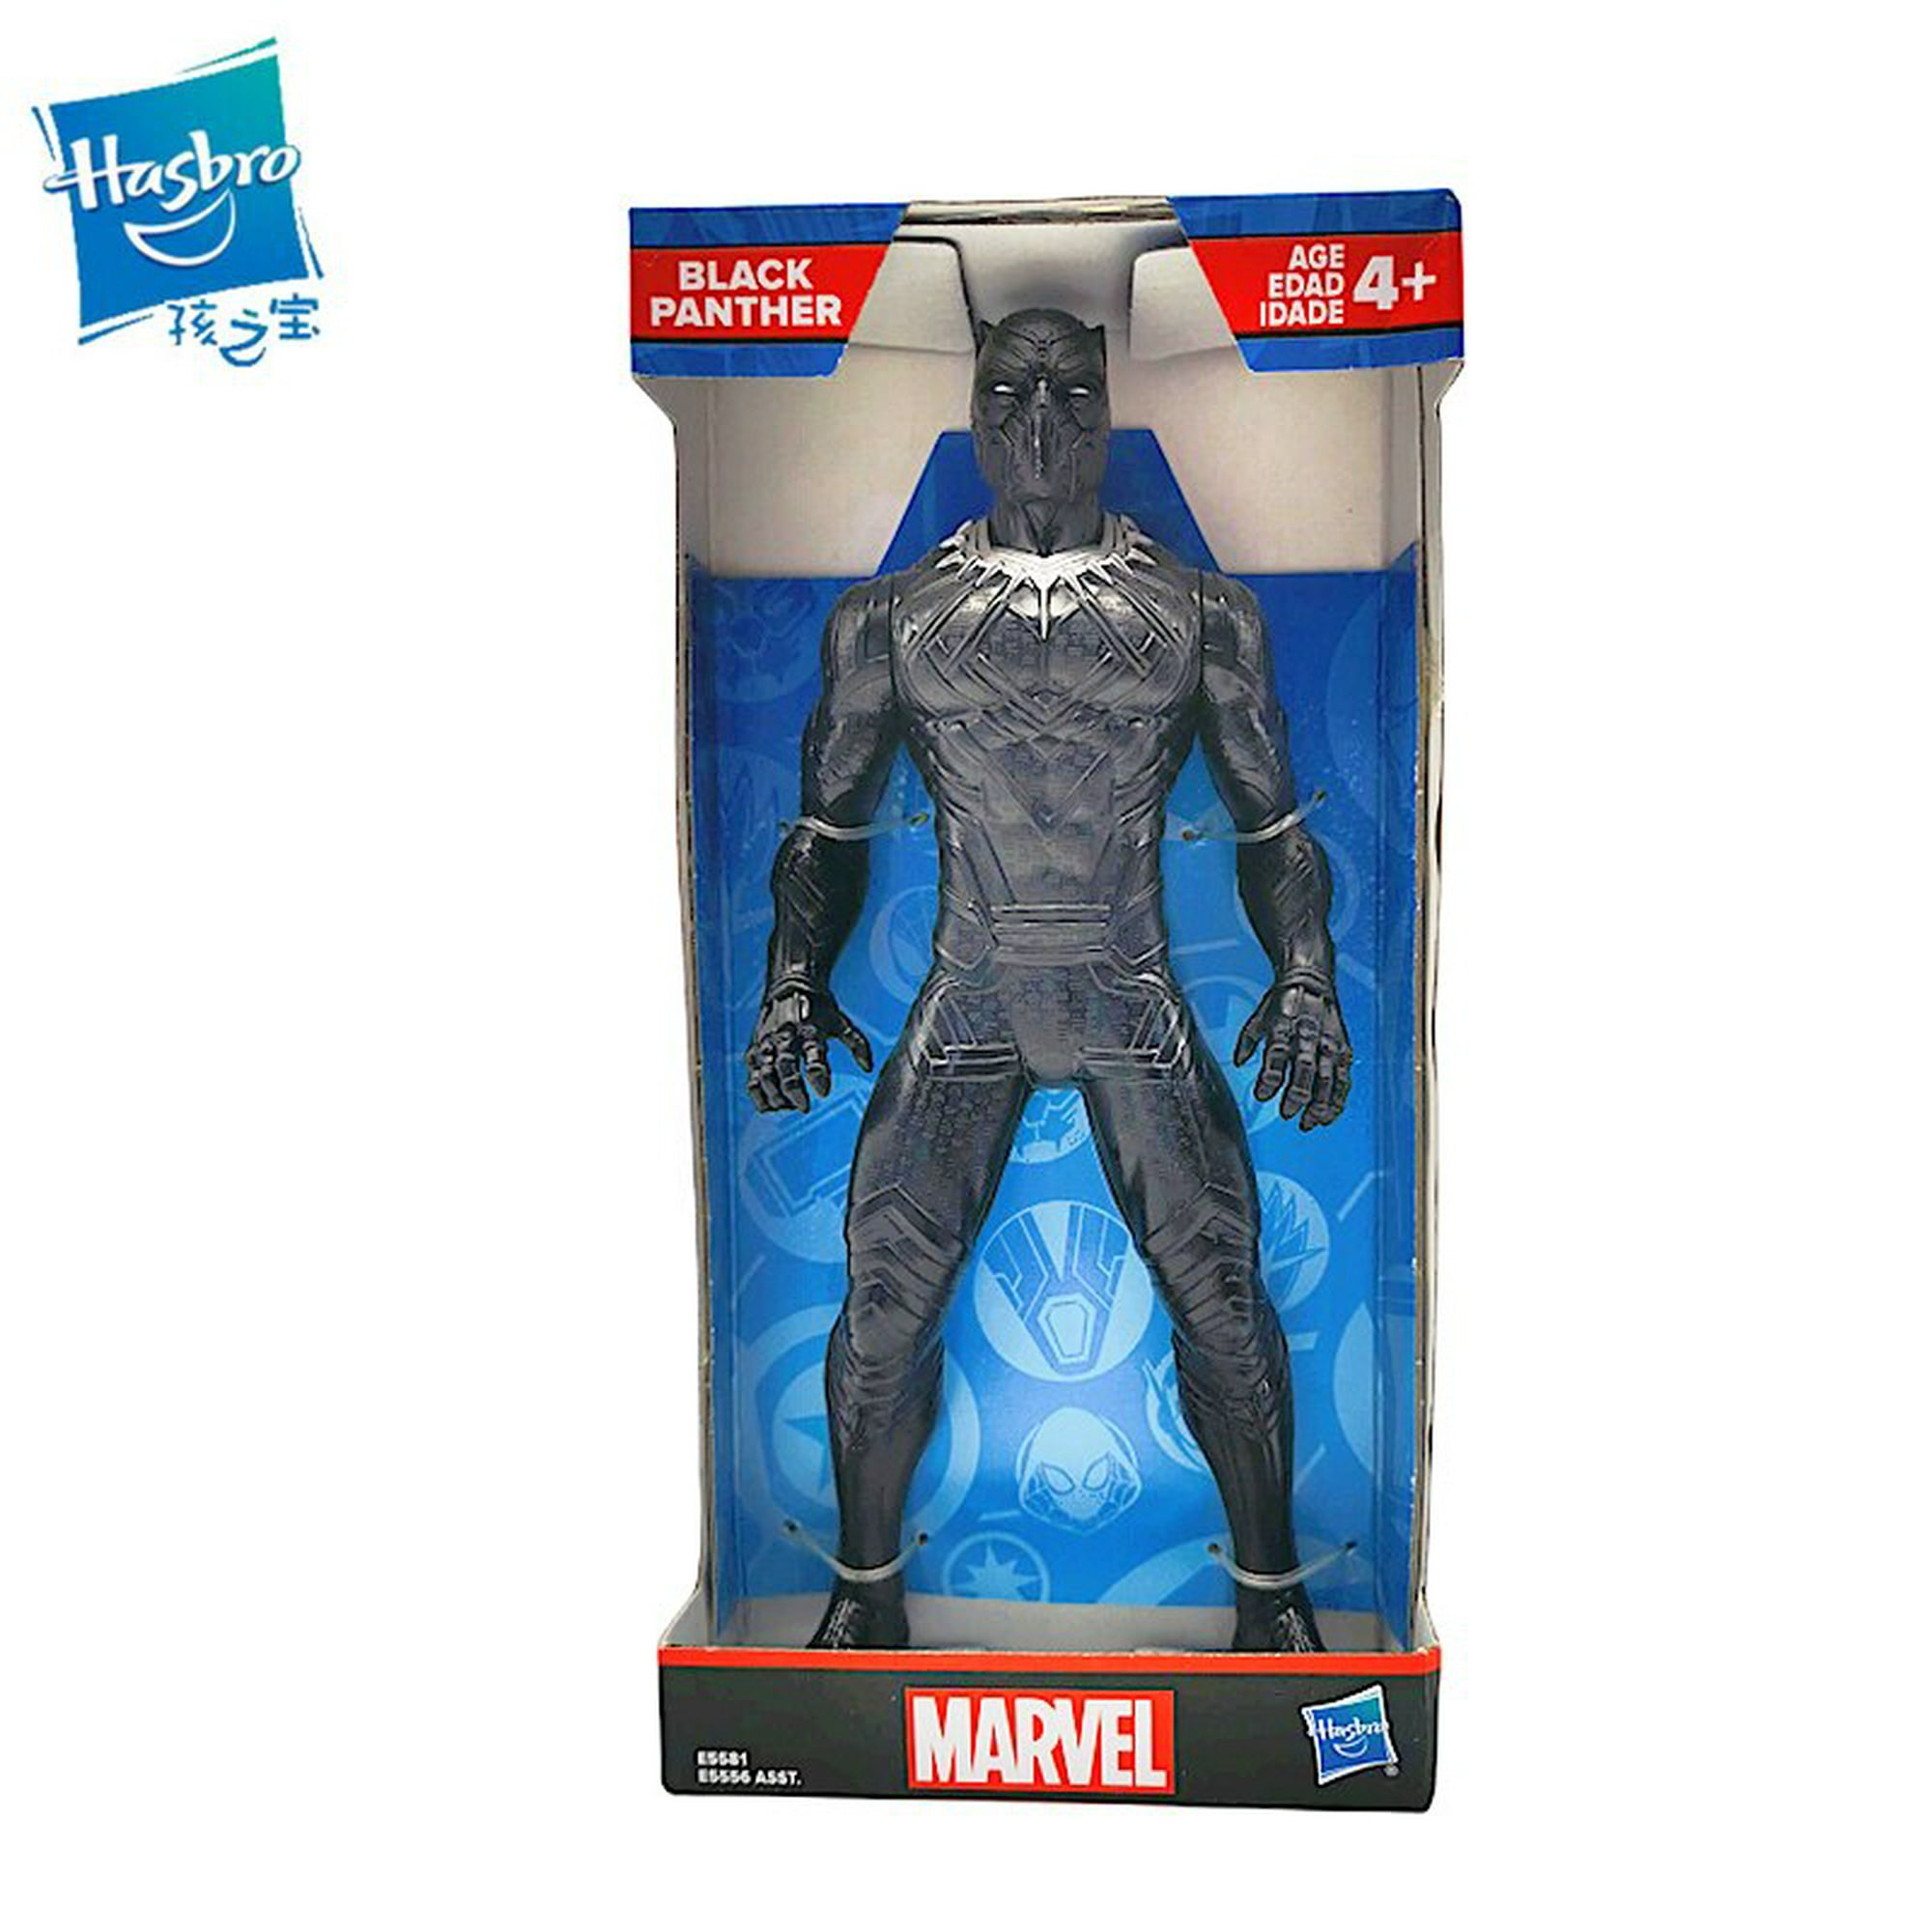 Genuino 17 CM Marvel Avengers Endgame Superhéroes Iron Man Black Panther  SpiderMan Capitán América Figura de acción Modelo Juguetes para niños  xuanjing unisex